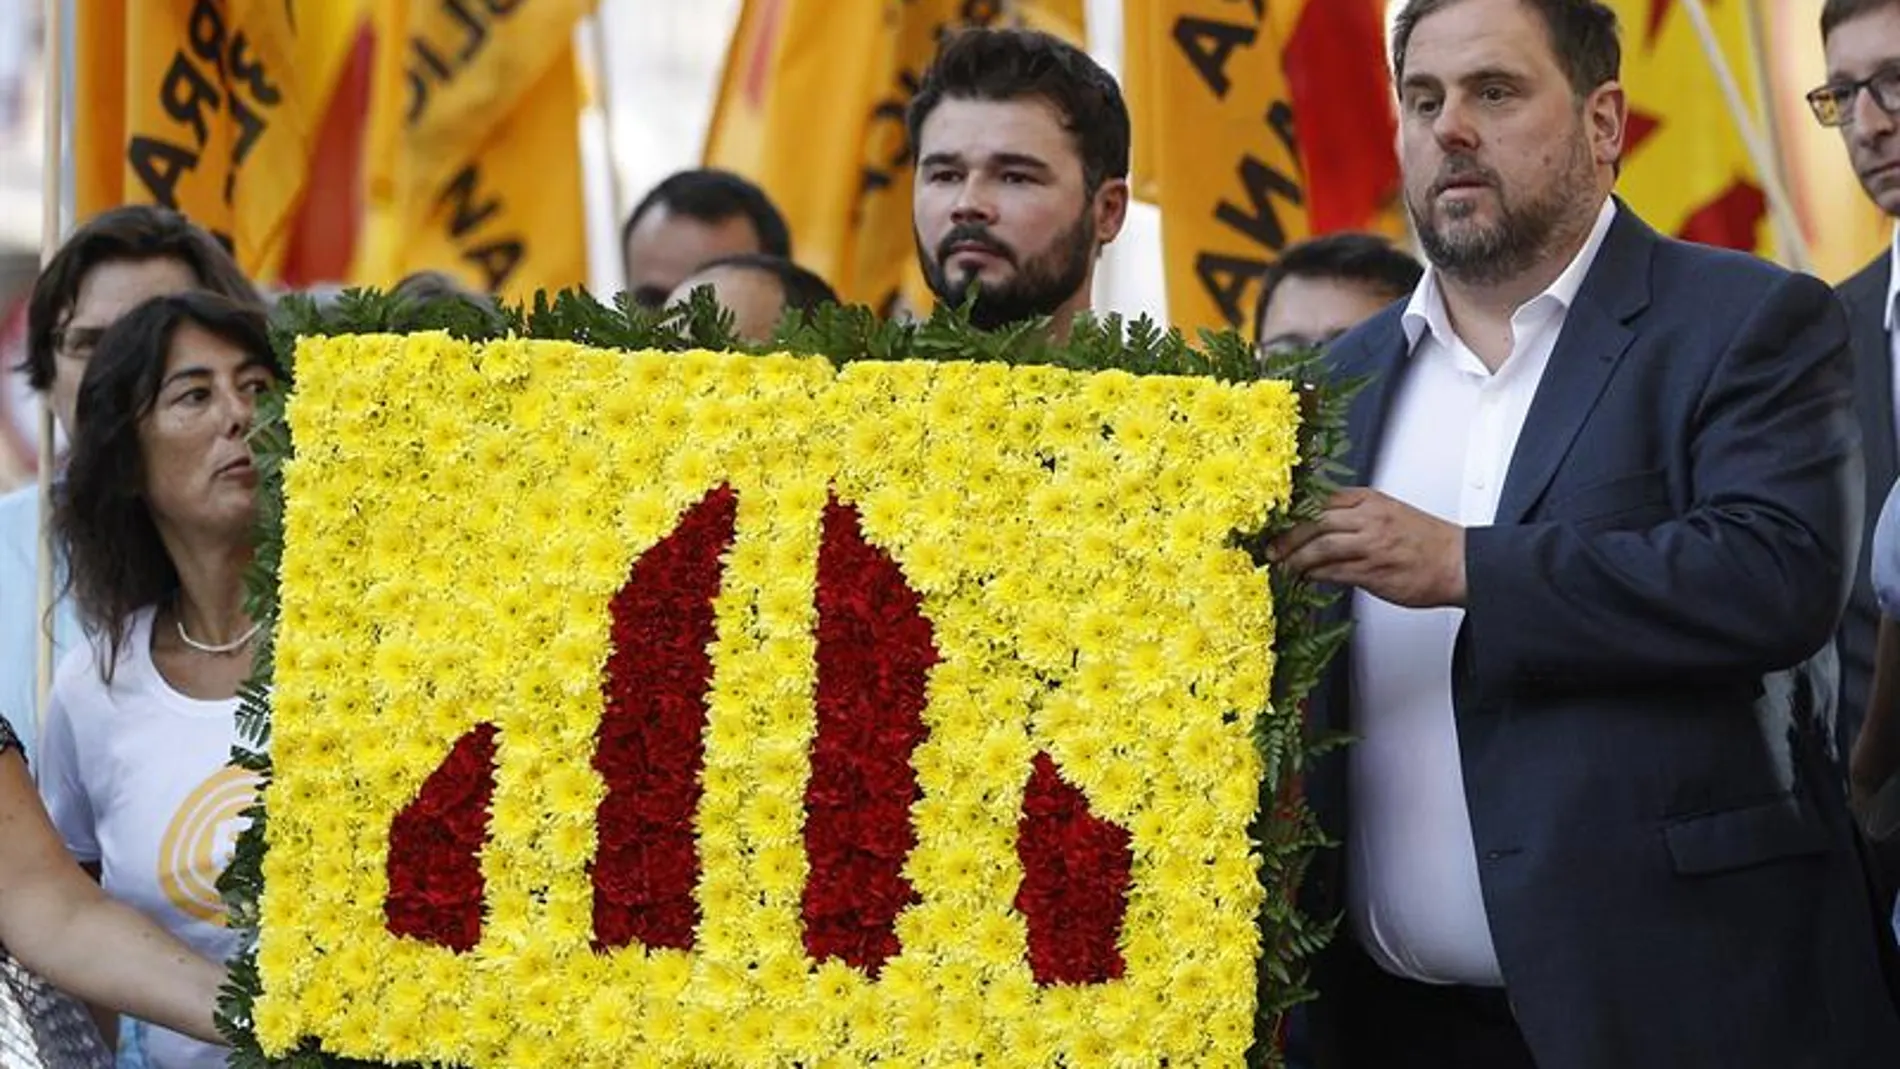 El diputado de ERC Gabriel Rufián y el líder del partido, Oriol Junqueras, asisten a la tradicional ofrenda floral al monumento de Rafael Casanova